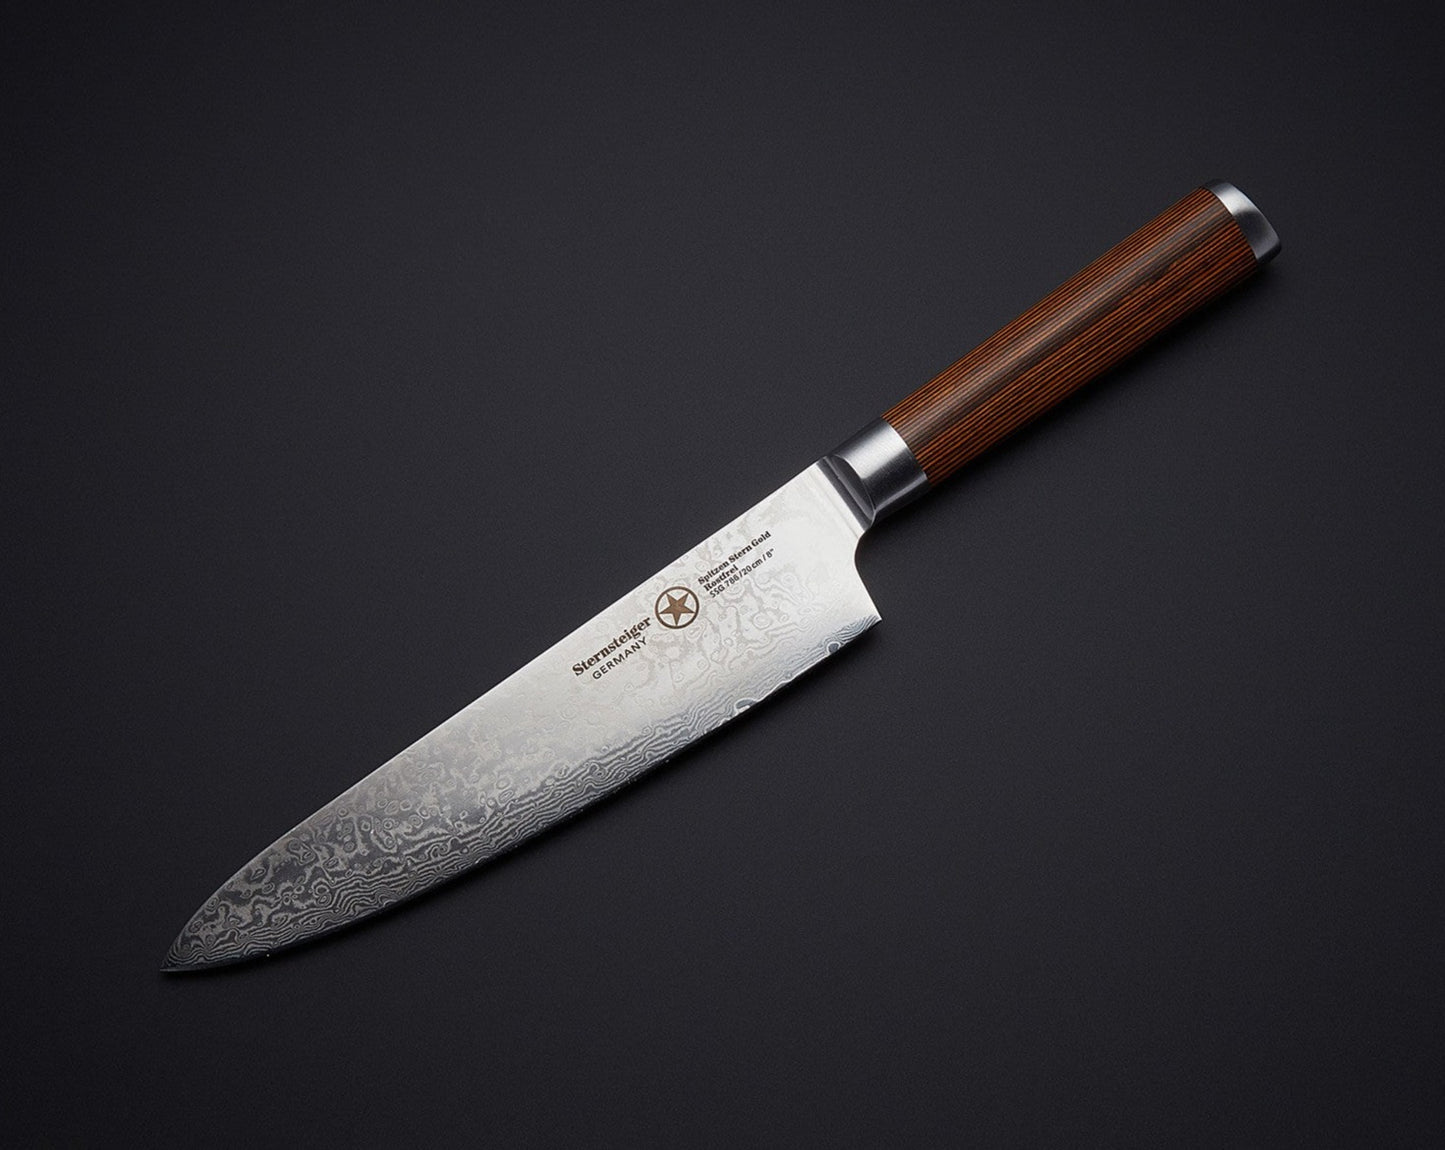 Sternsteiger Damascus Chef's knife - japanese damascus steel VG-10 - SPITZEN-STERN GOLD SERIES